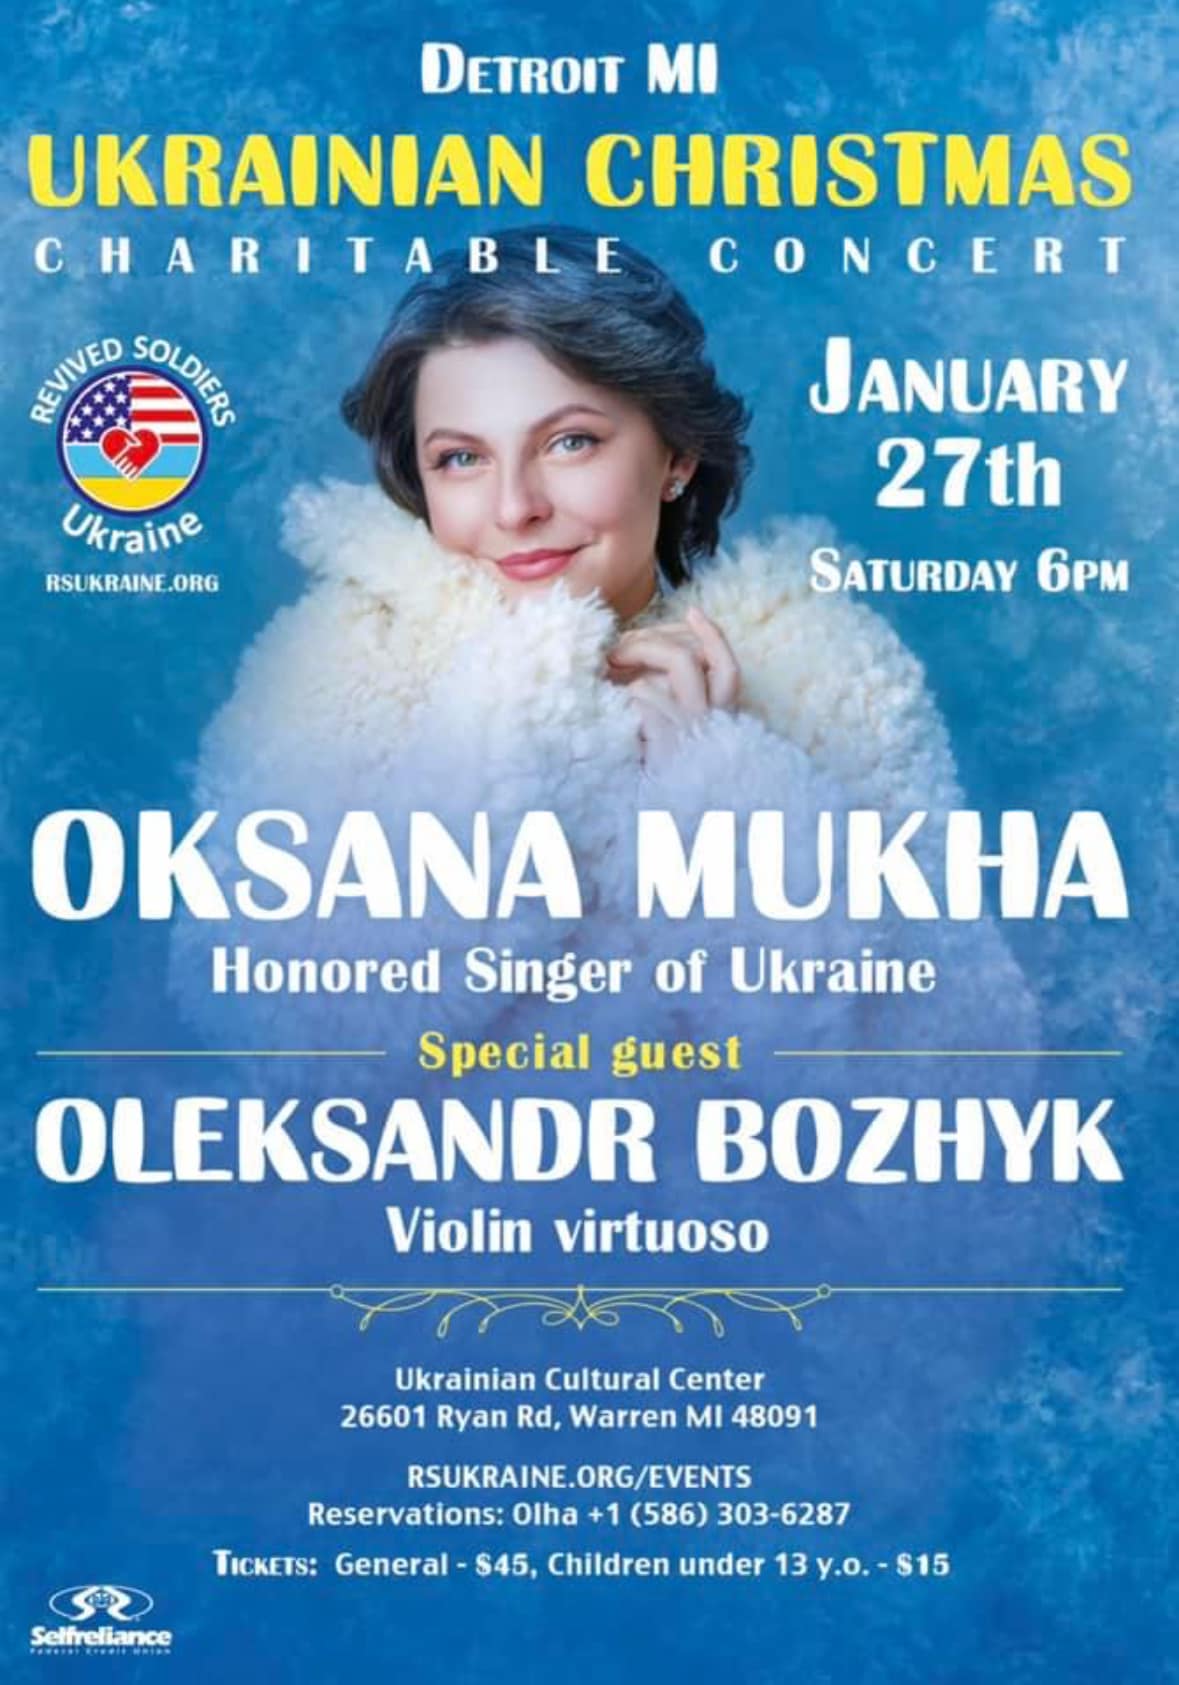 Ukrainian Christmas Charitable Concert - Oksana Mukha